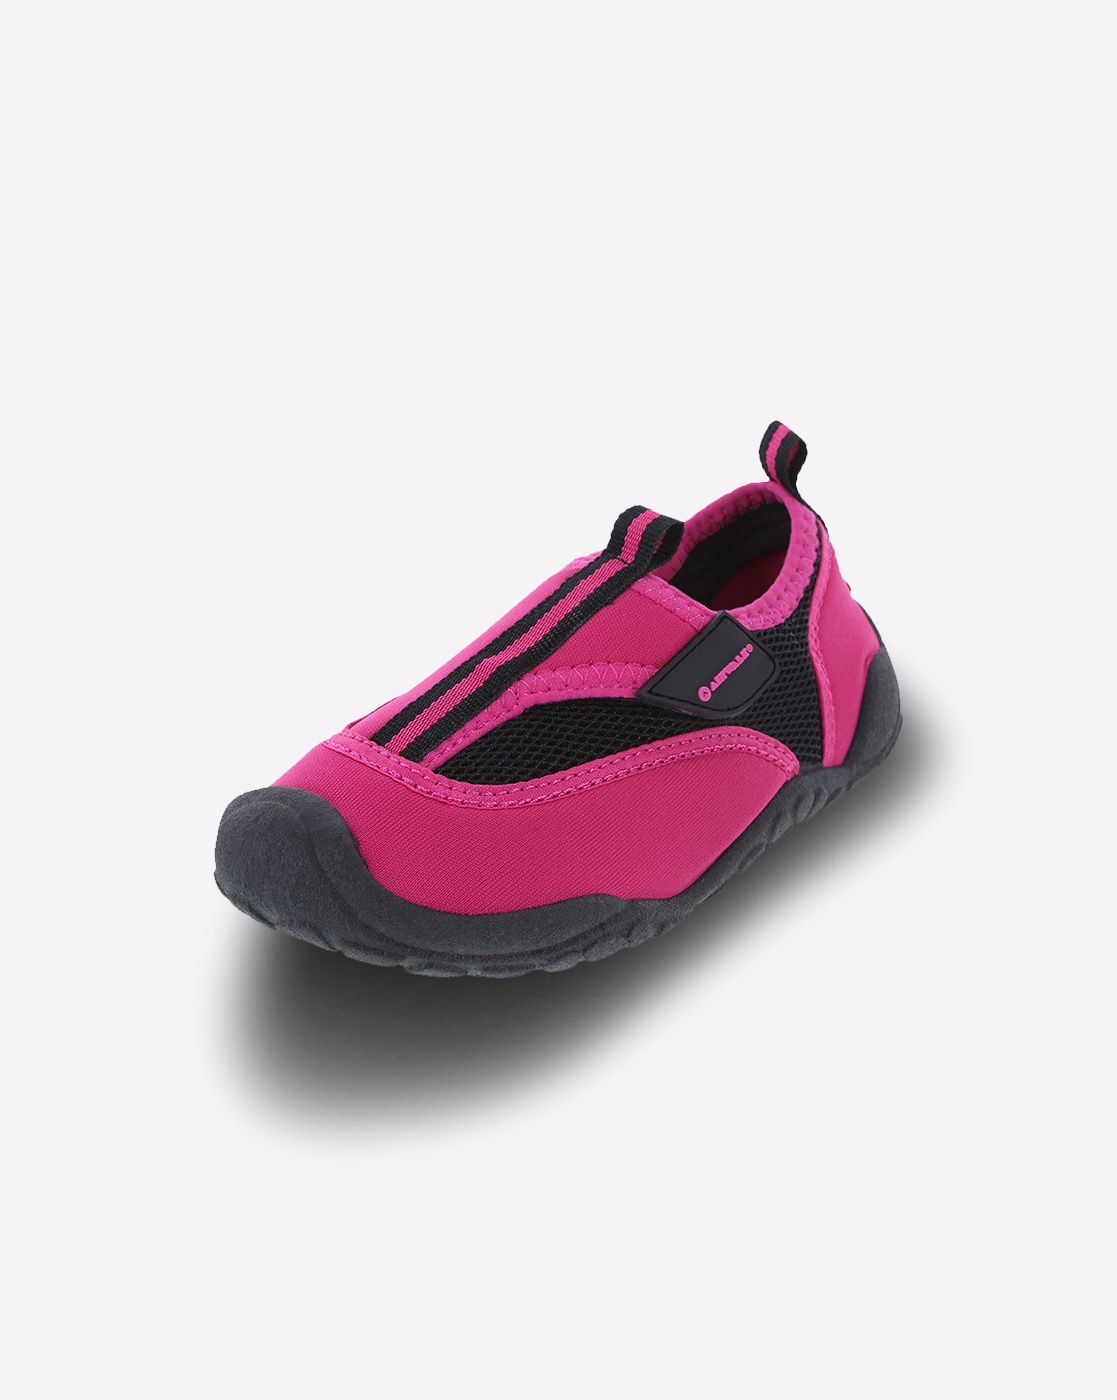 airwalk shoes for girls